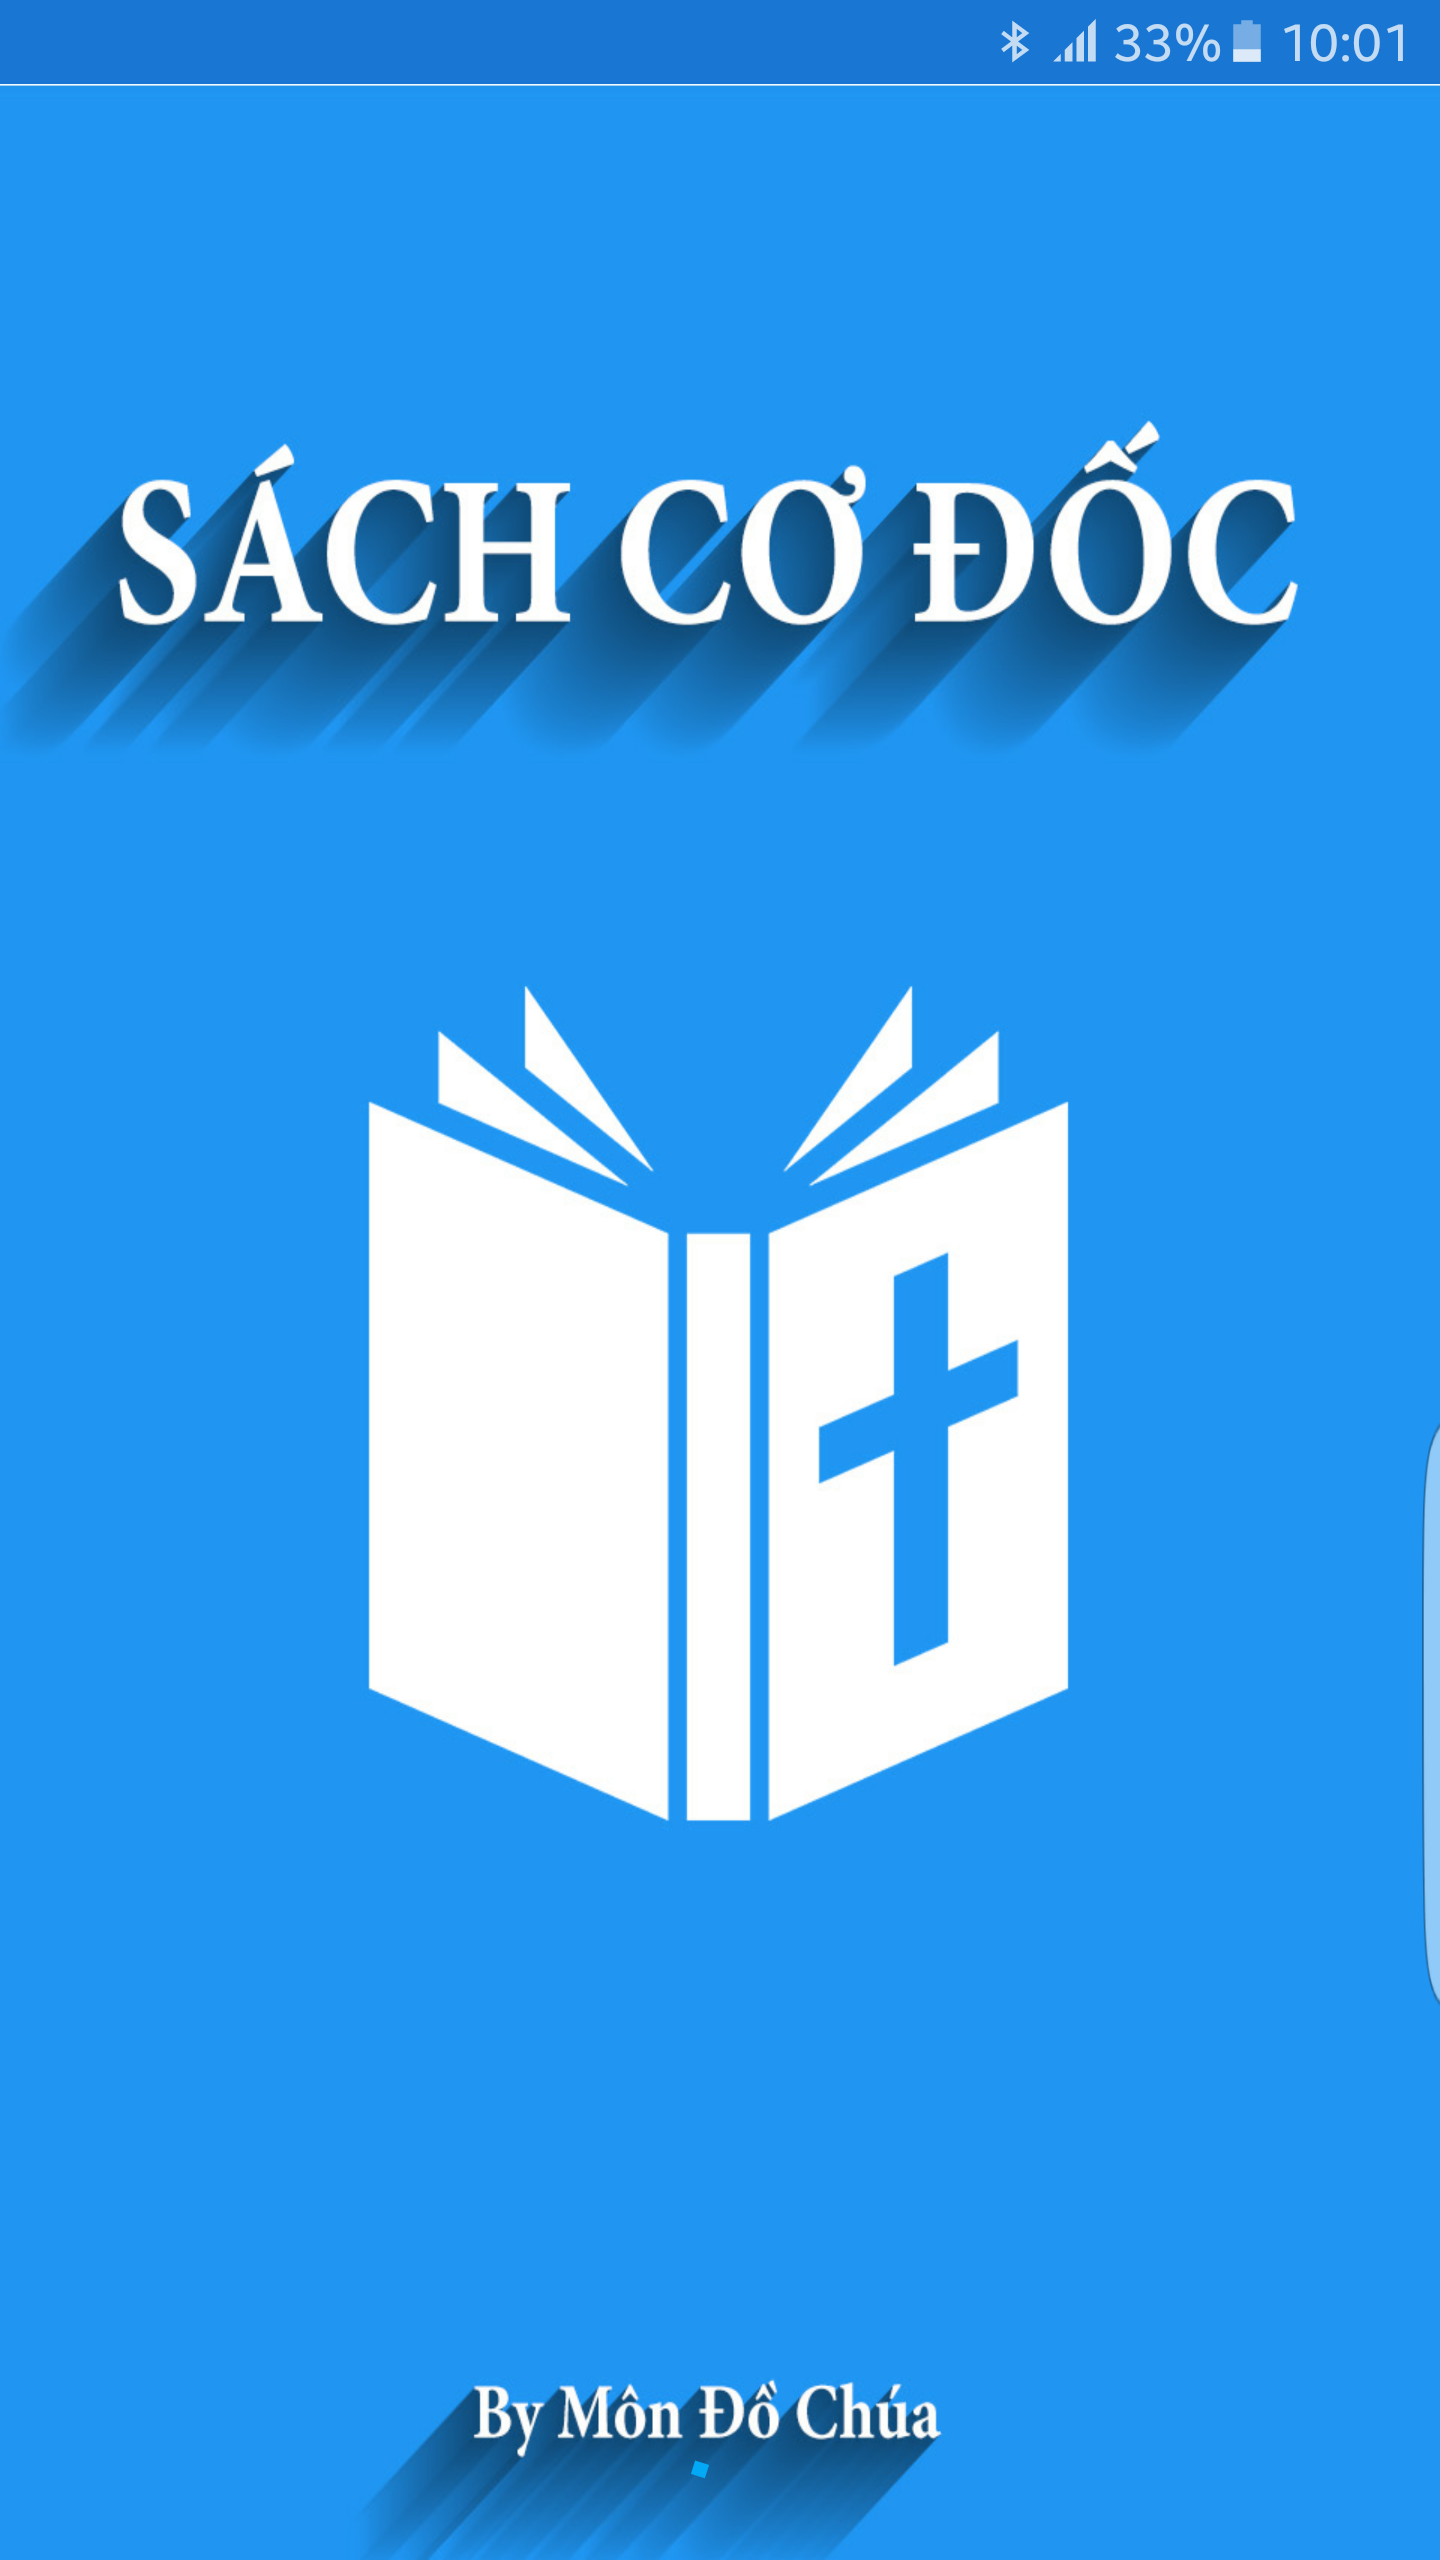 sachcodoc_intro